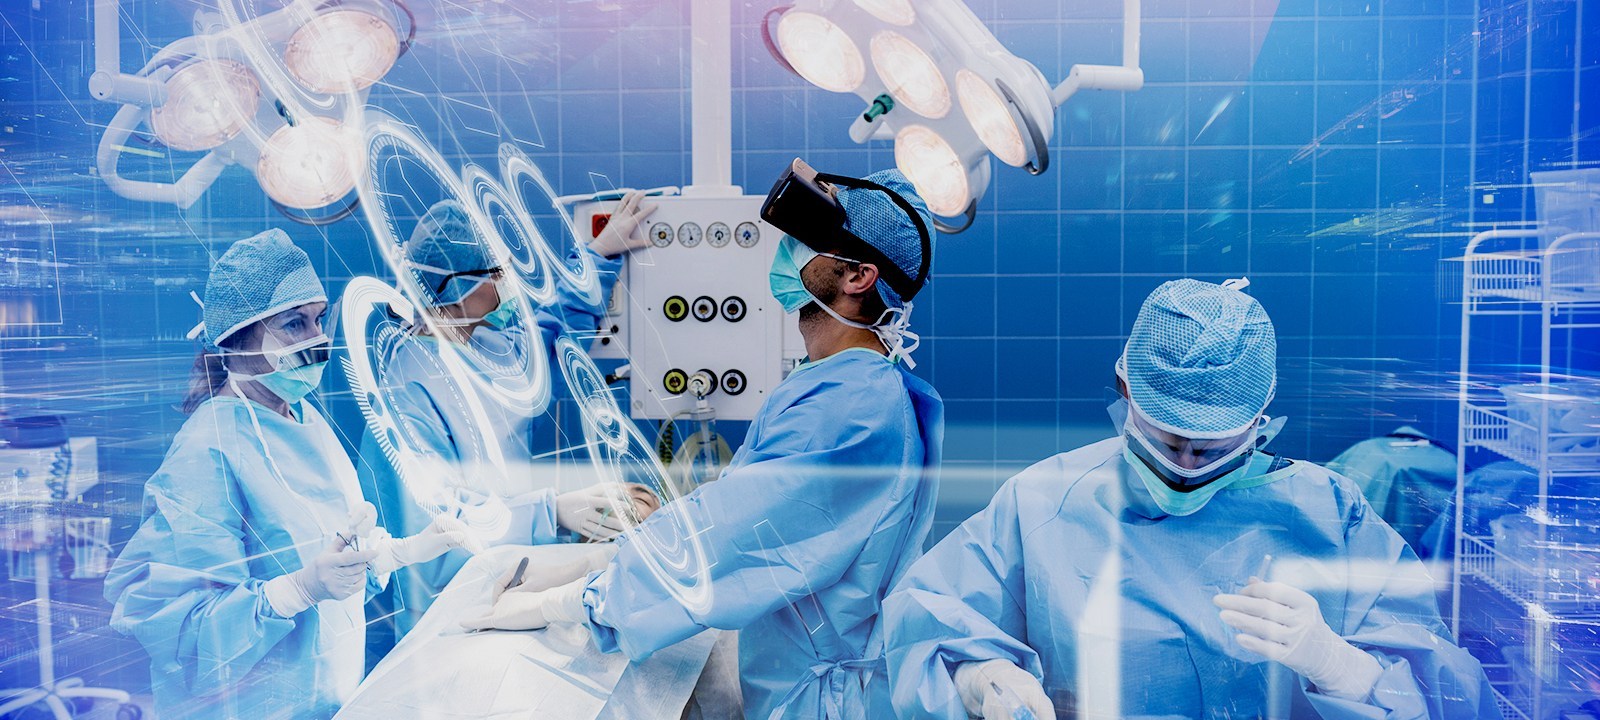 这是一张手术室的图片，展示了医生和护士们穿着蓝色手术服，正在进行手术。环境看起来先进，设备齐全。